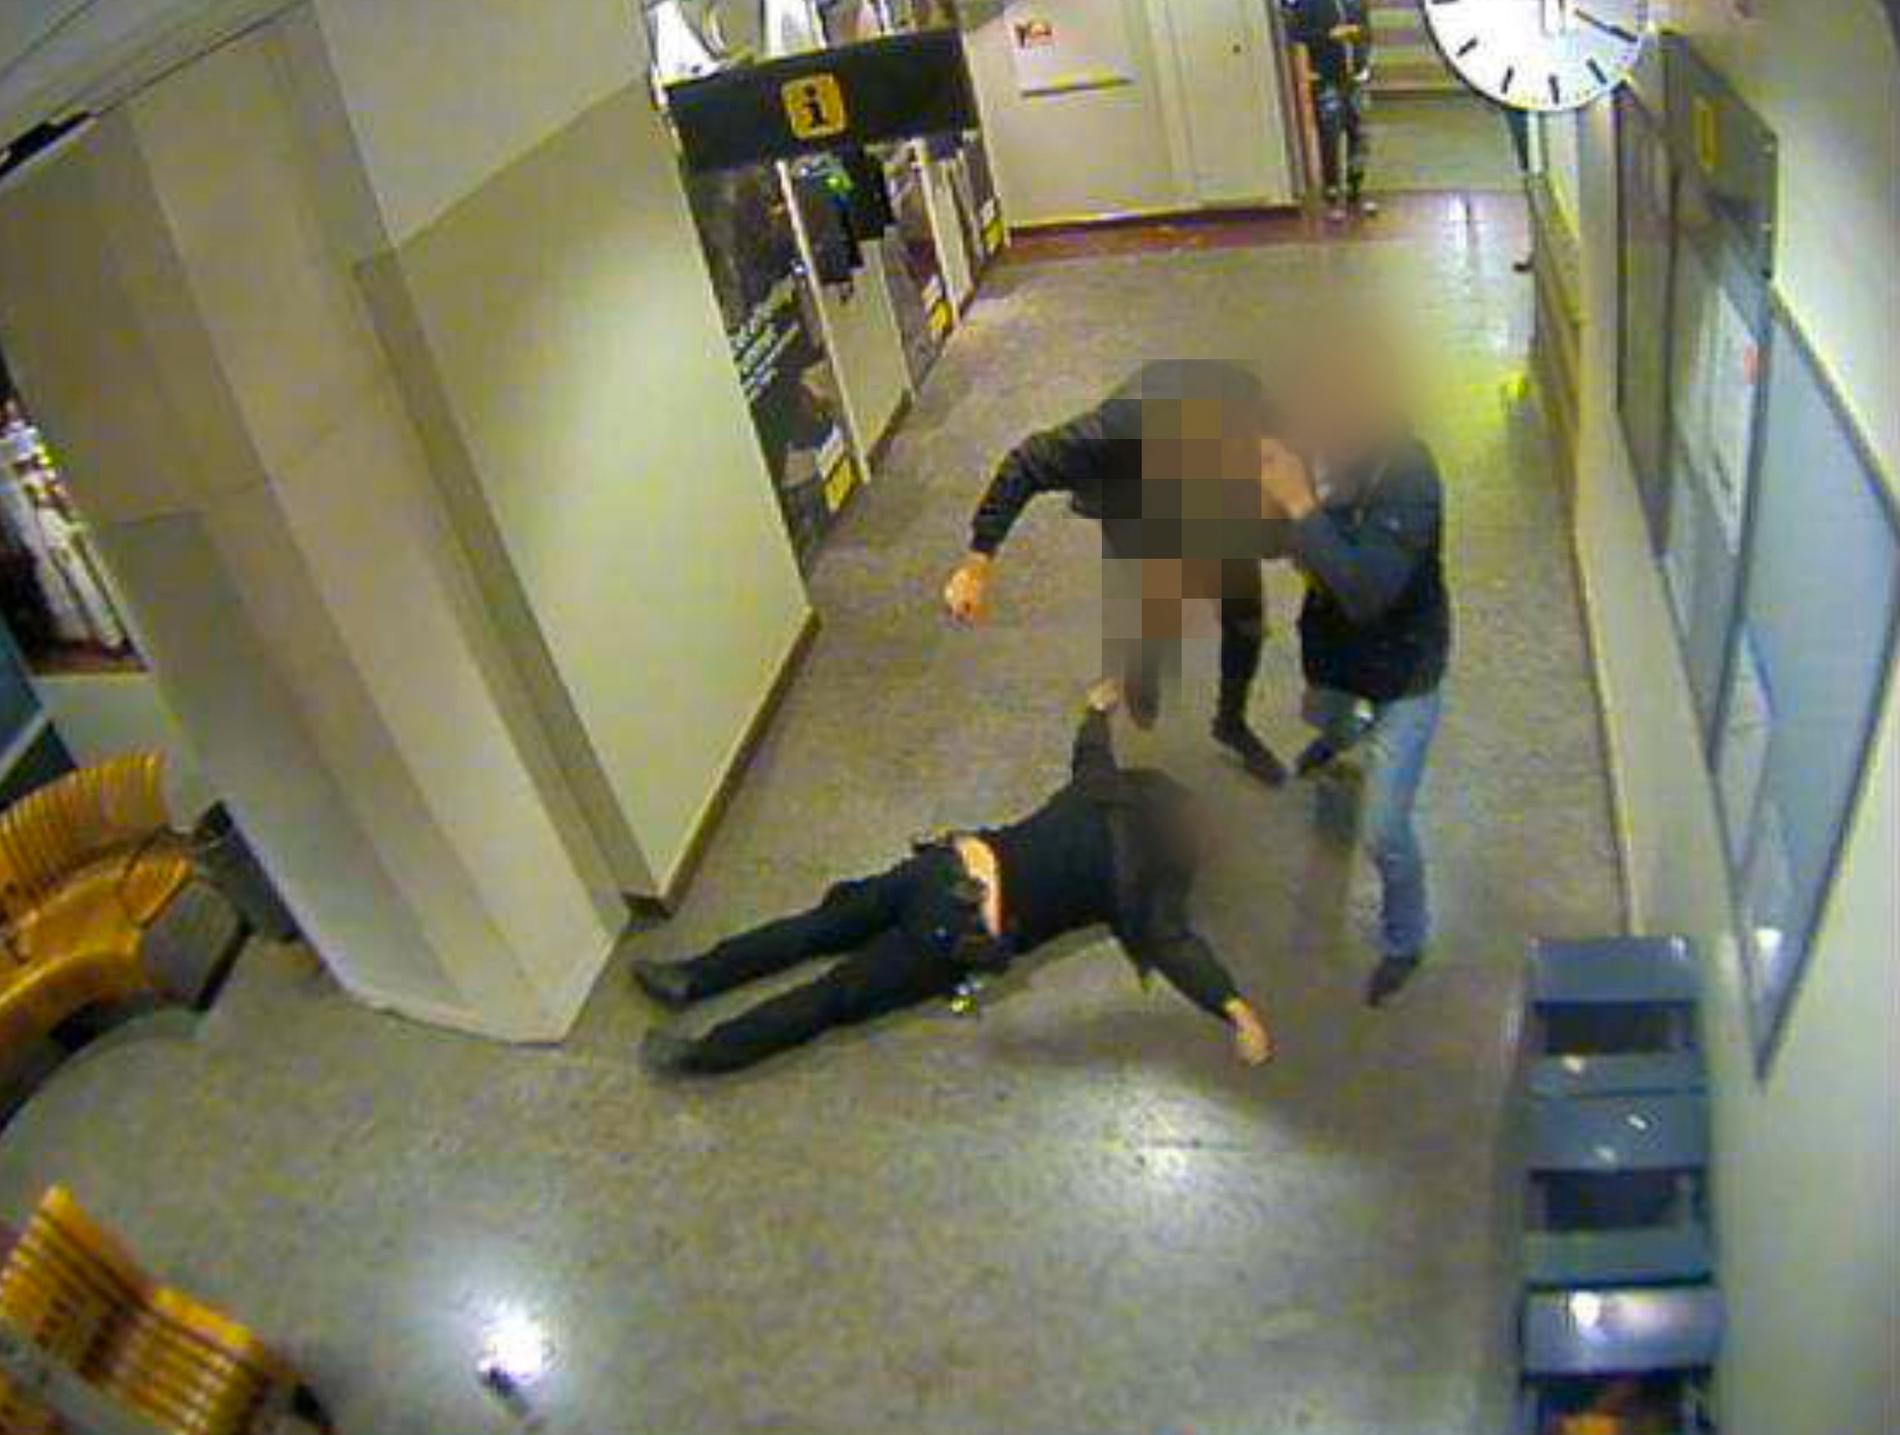 Mannen ses lyfta sitt ben för att sparka polismannen i huvudet samtidigt som en annan man ur gruppen försöker dra bort honom. 